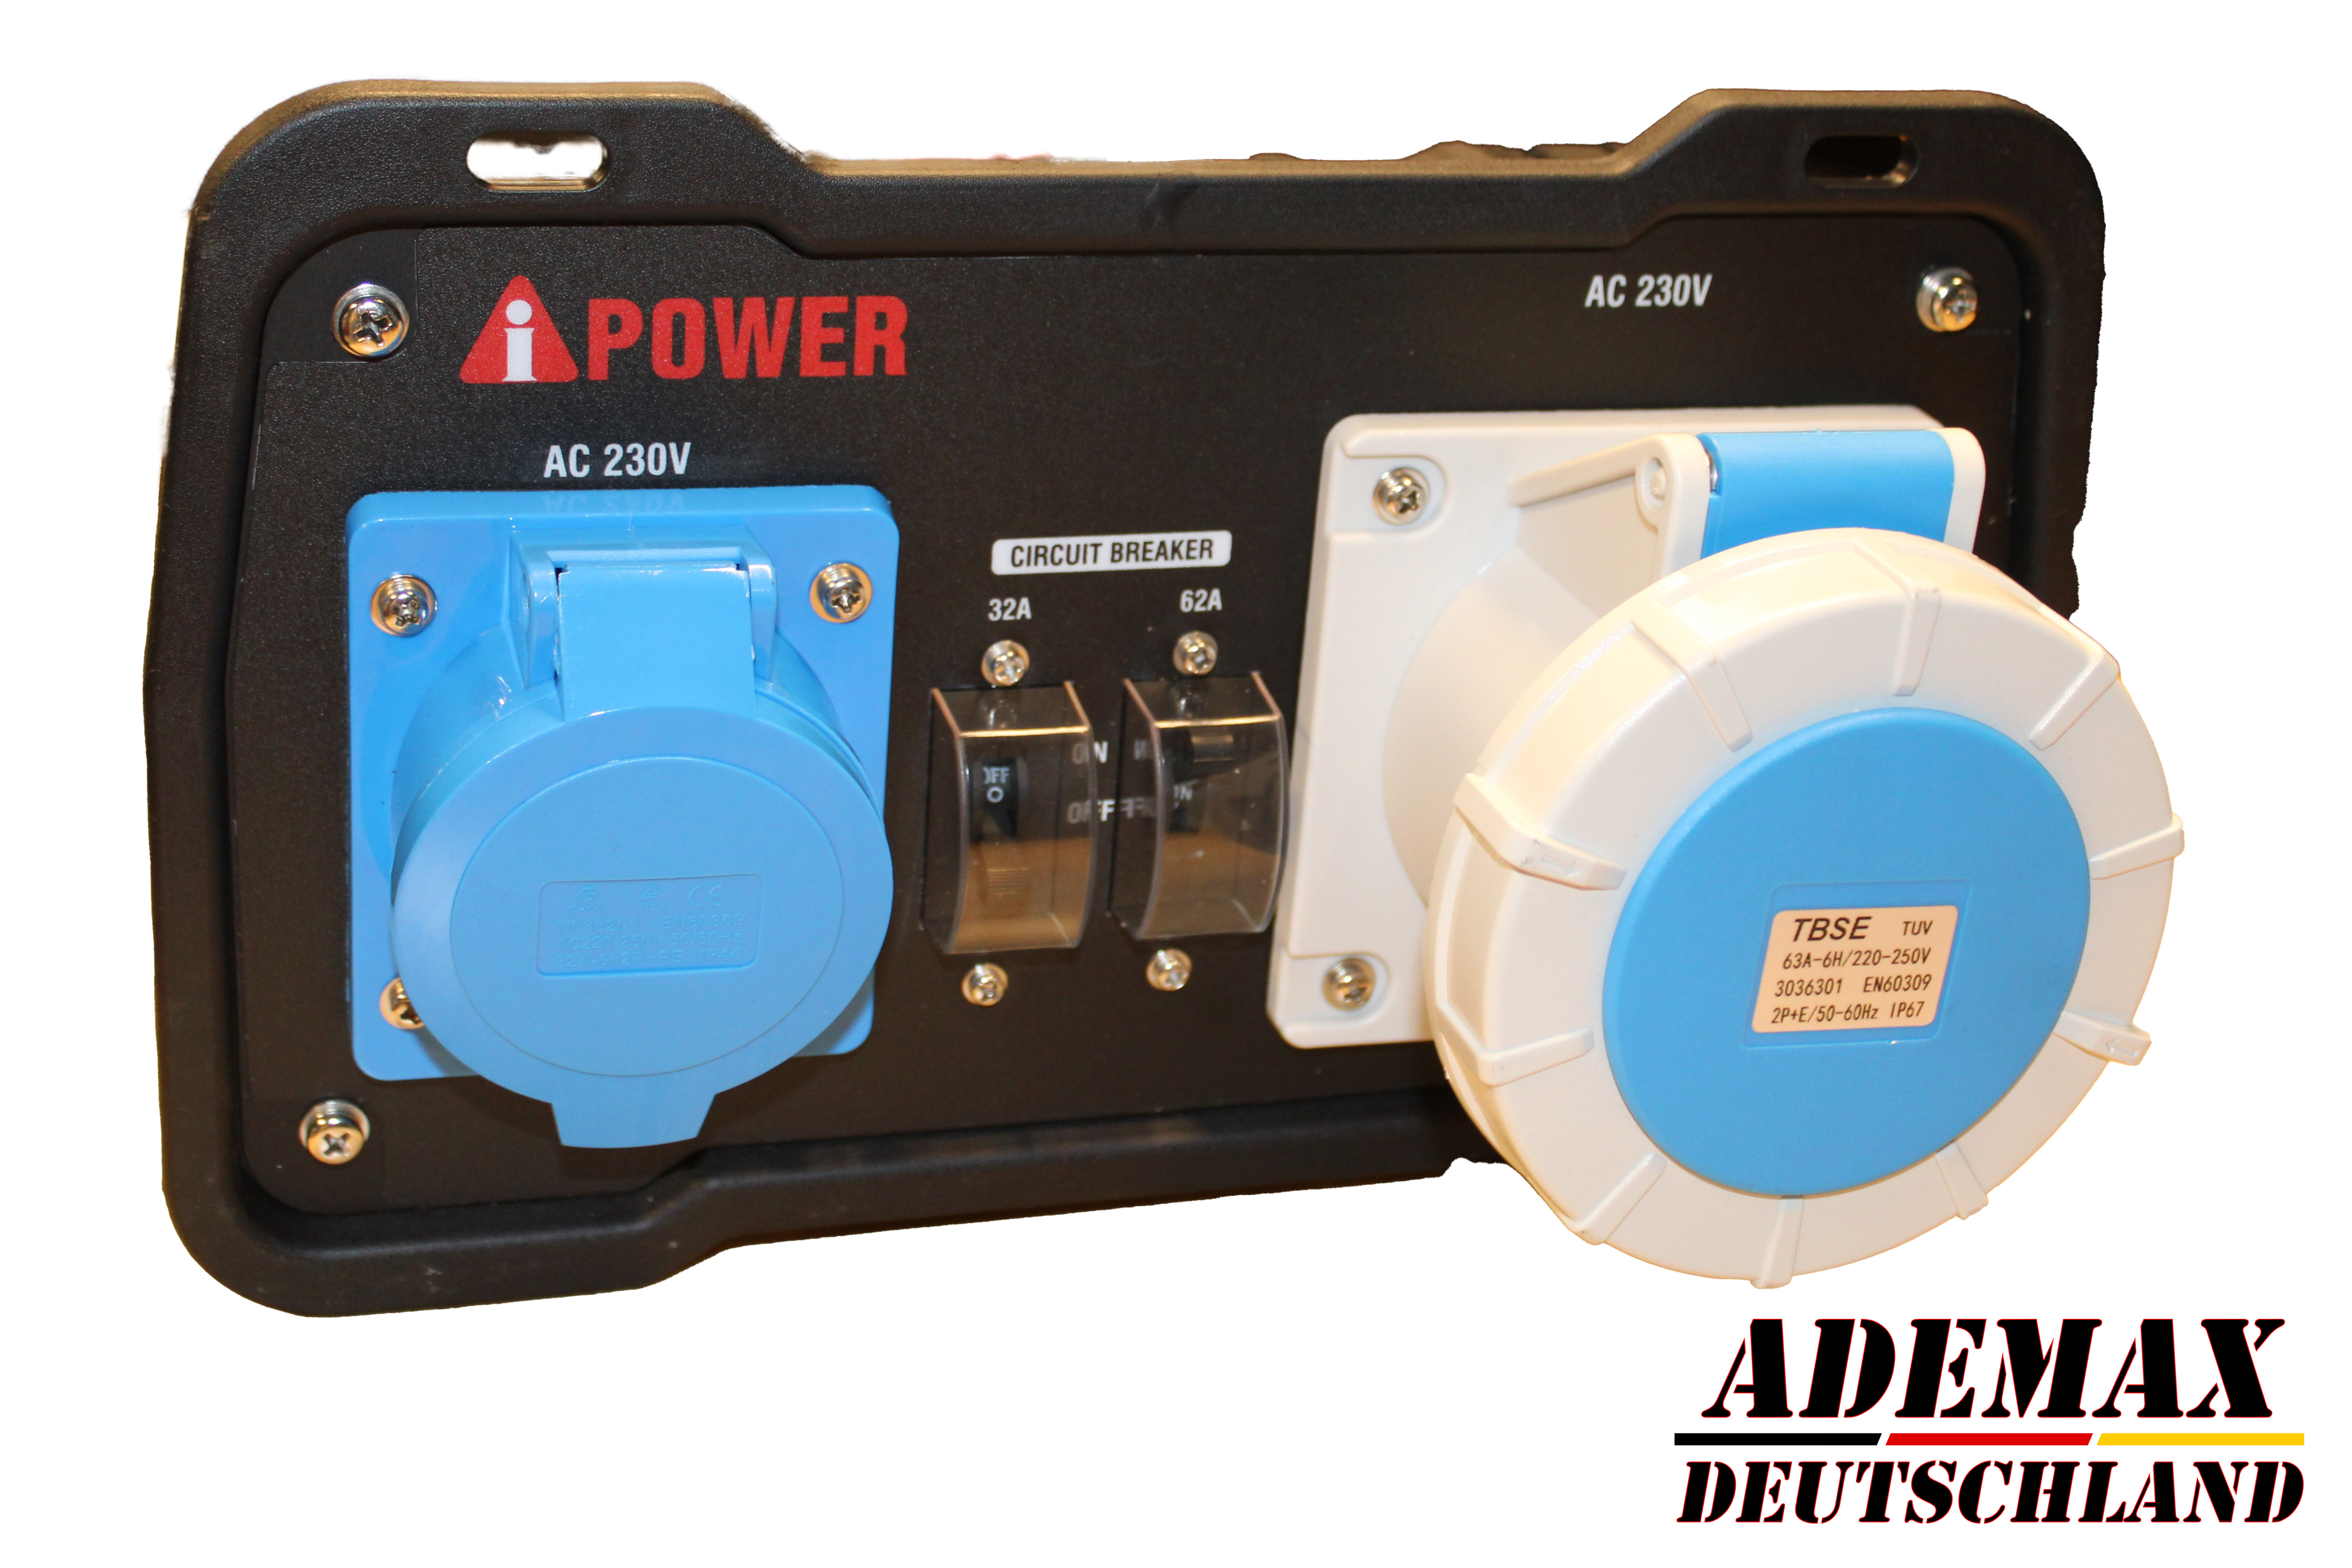                     Parallel KIT für AiPower SC8000i, ermöglicht bis zu 15 kW
                                    